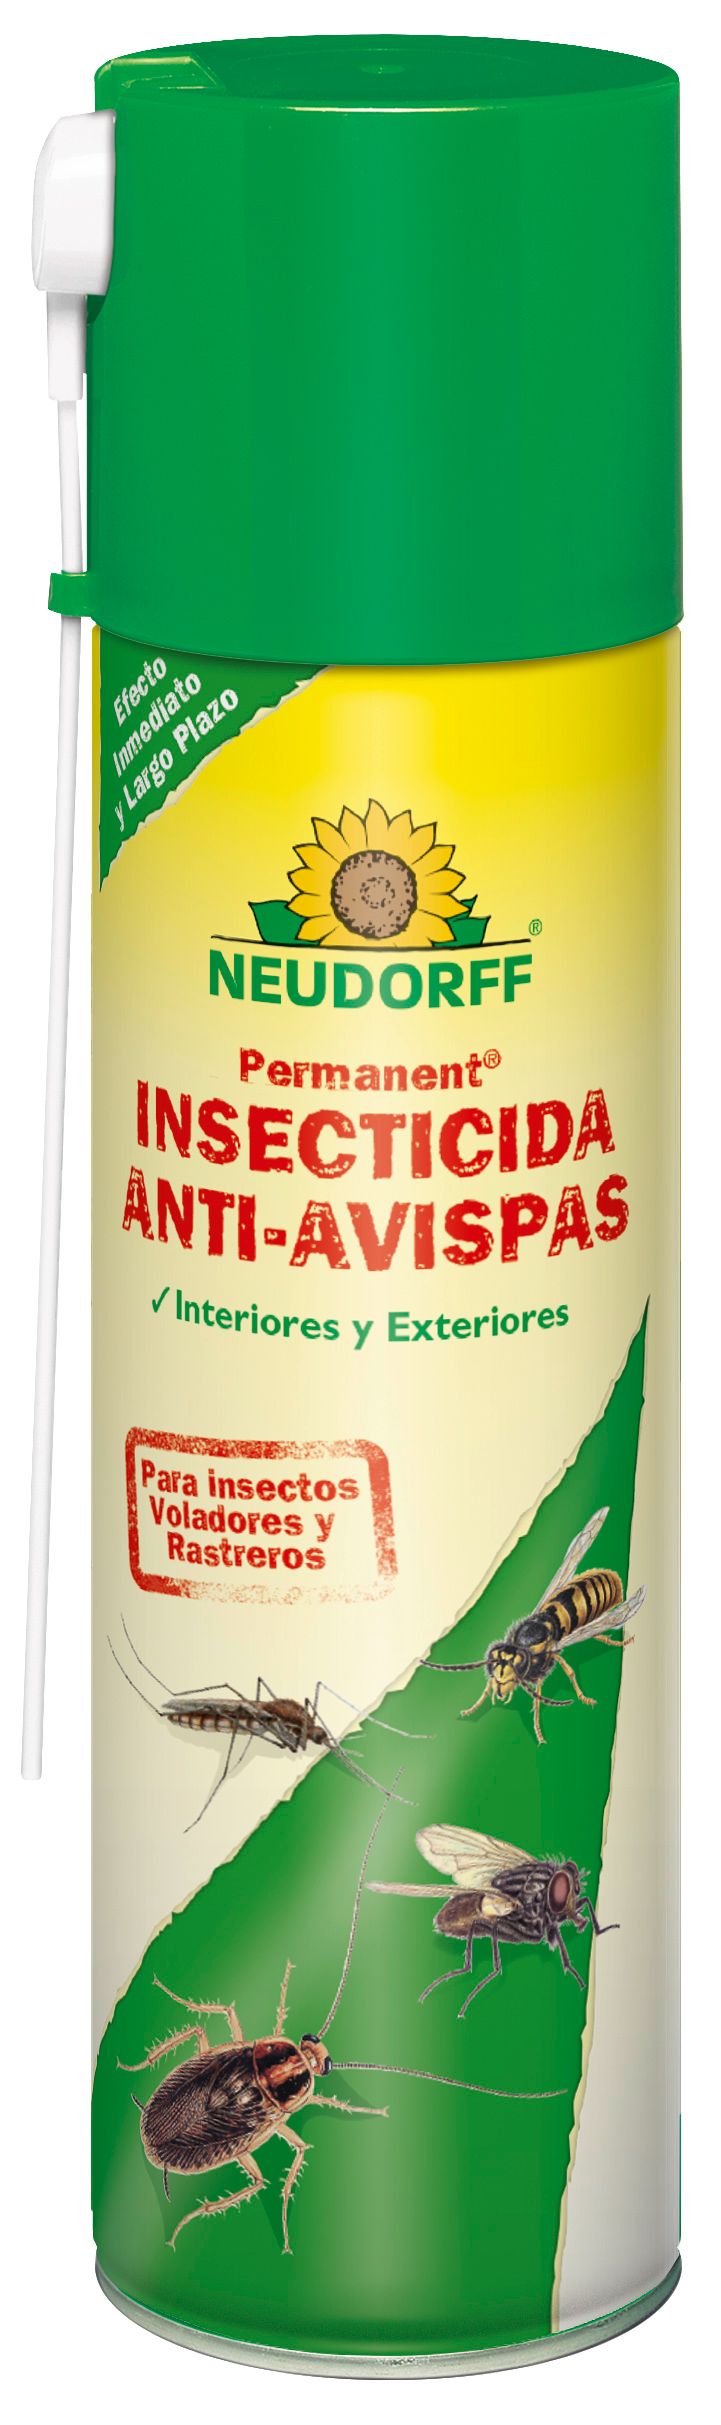 Permanent Insecticida Anti-Avispas_500ml_ES.jpg